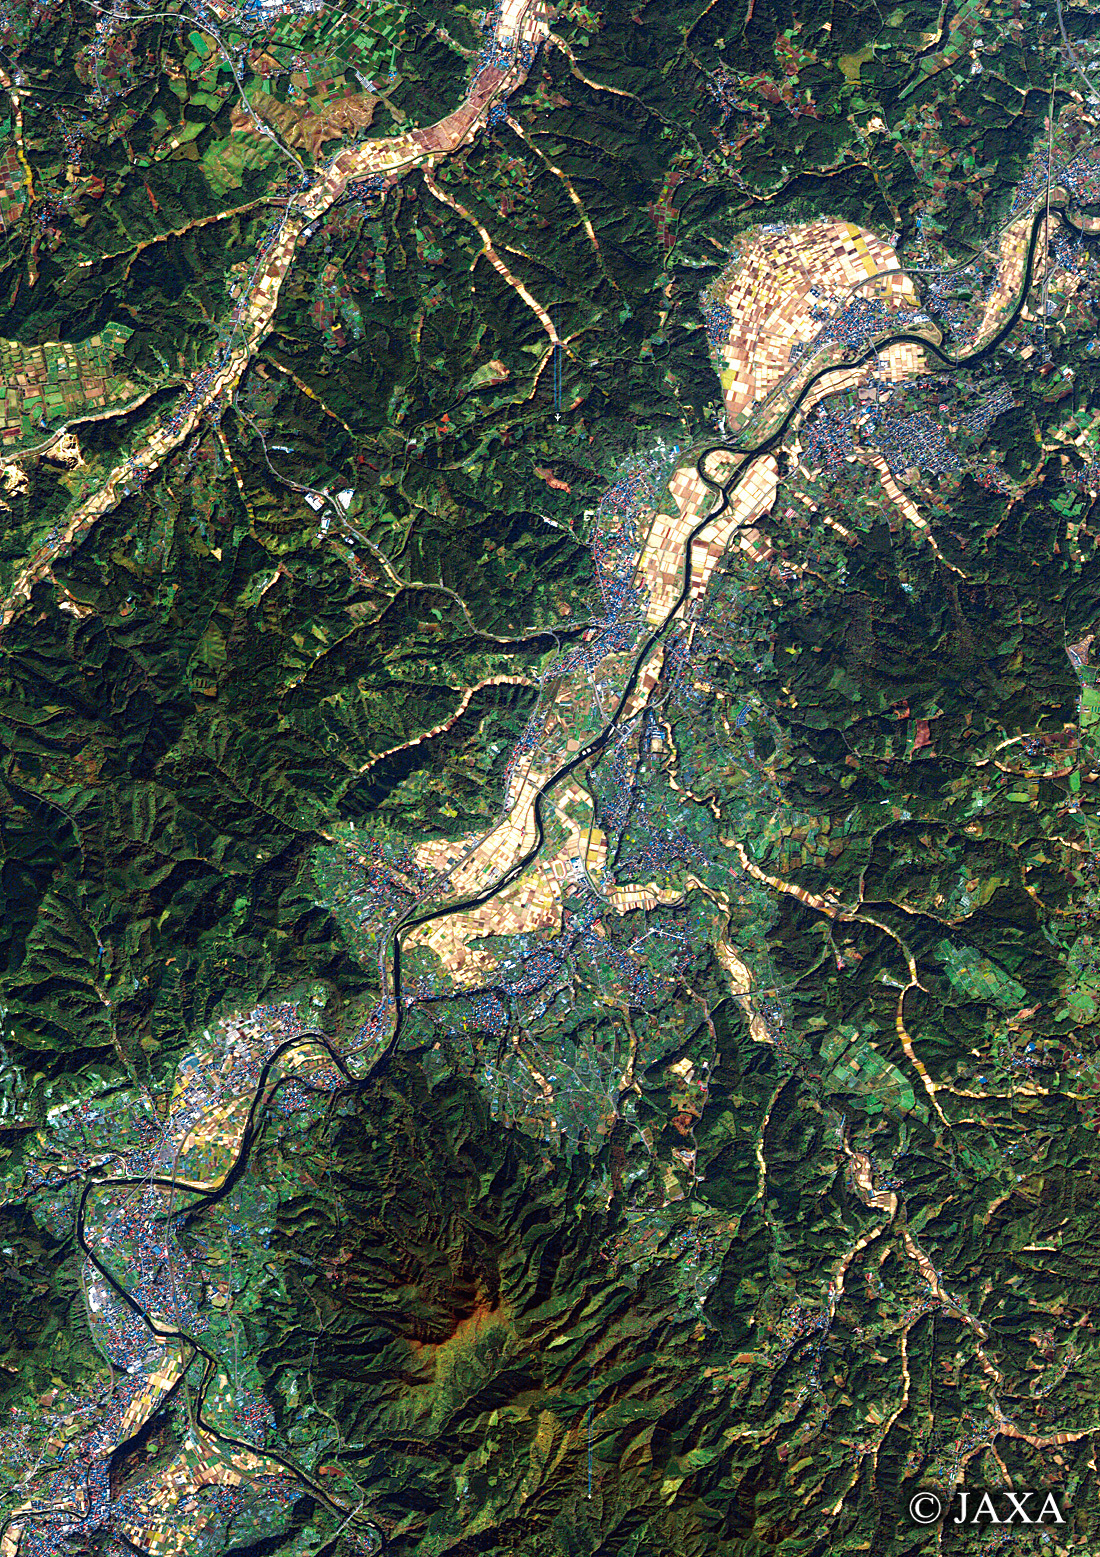 だいちから見た日本の都市 三戸郡:衛星画像